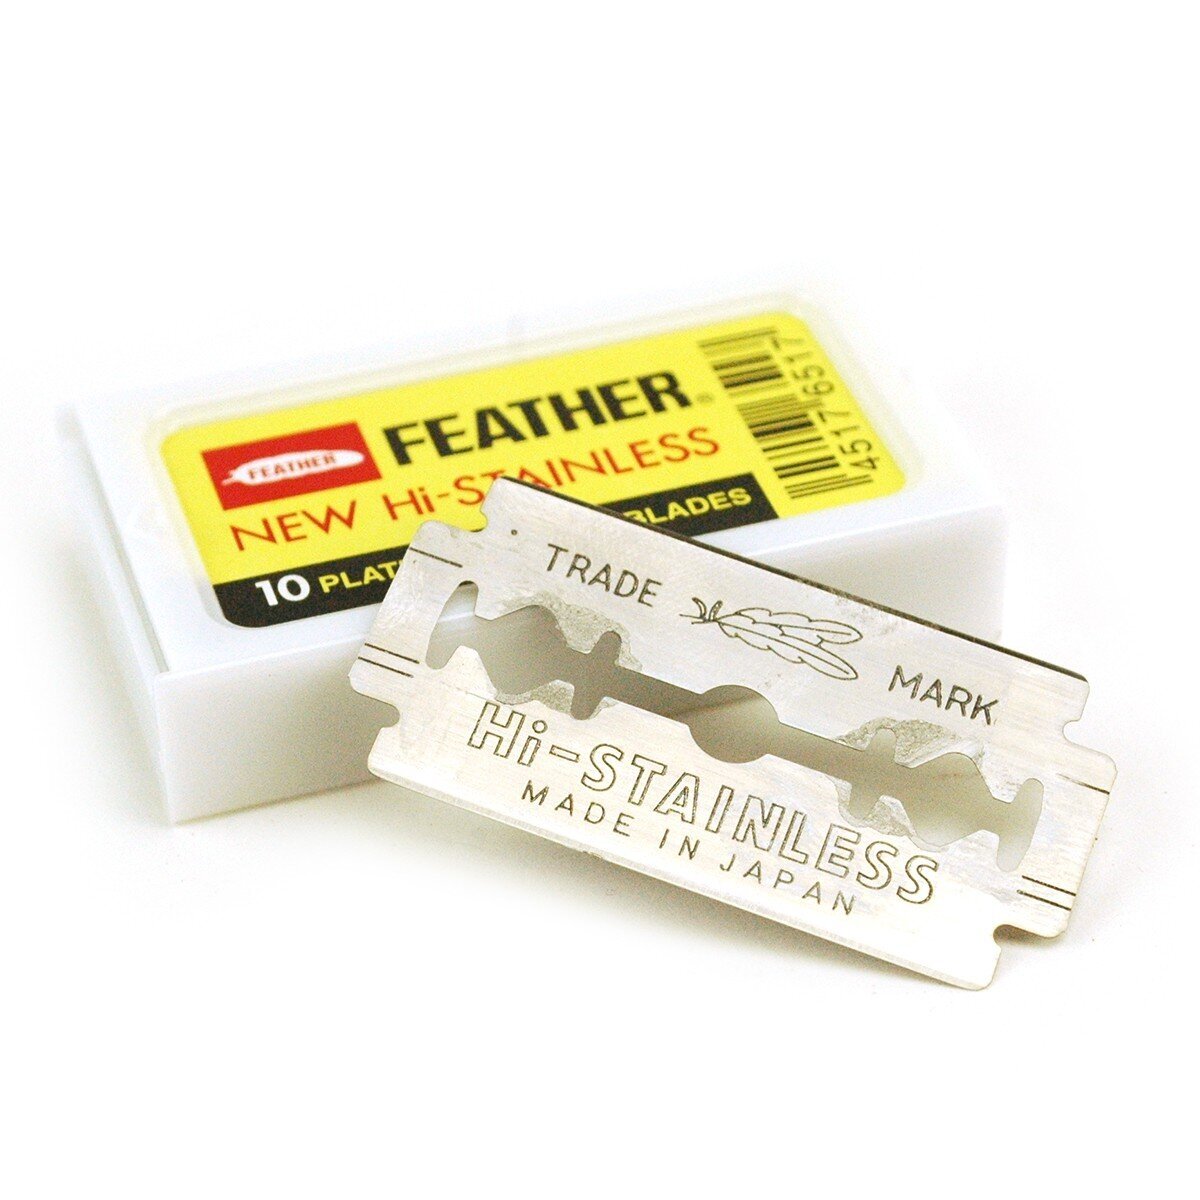 Feather Hi-Stainless 10 double edge razor blades (yellow) 